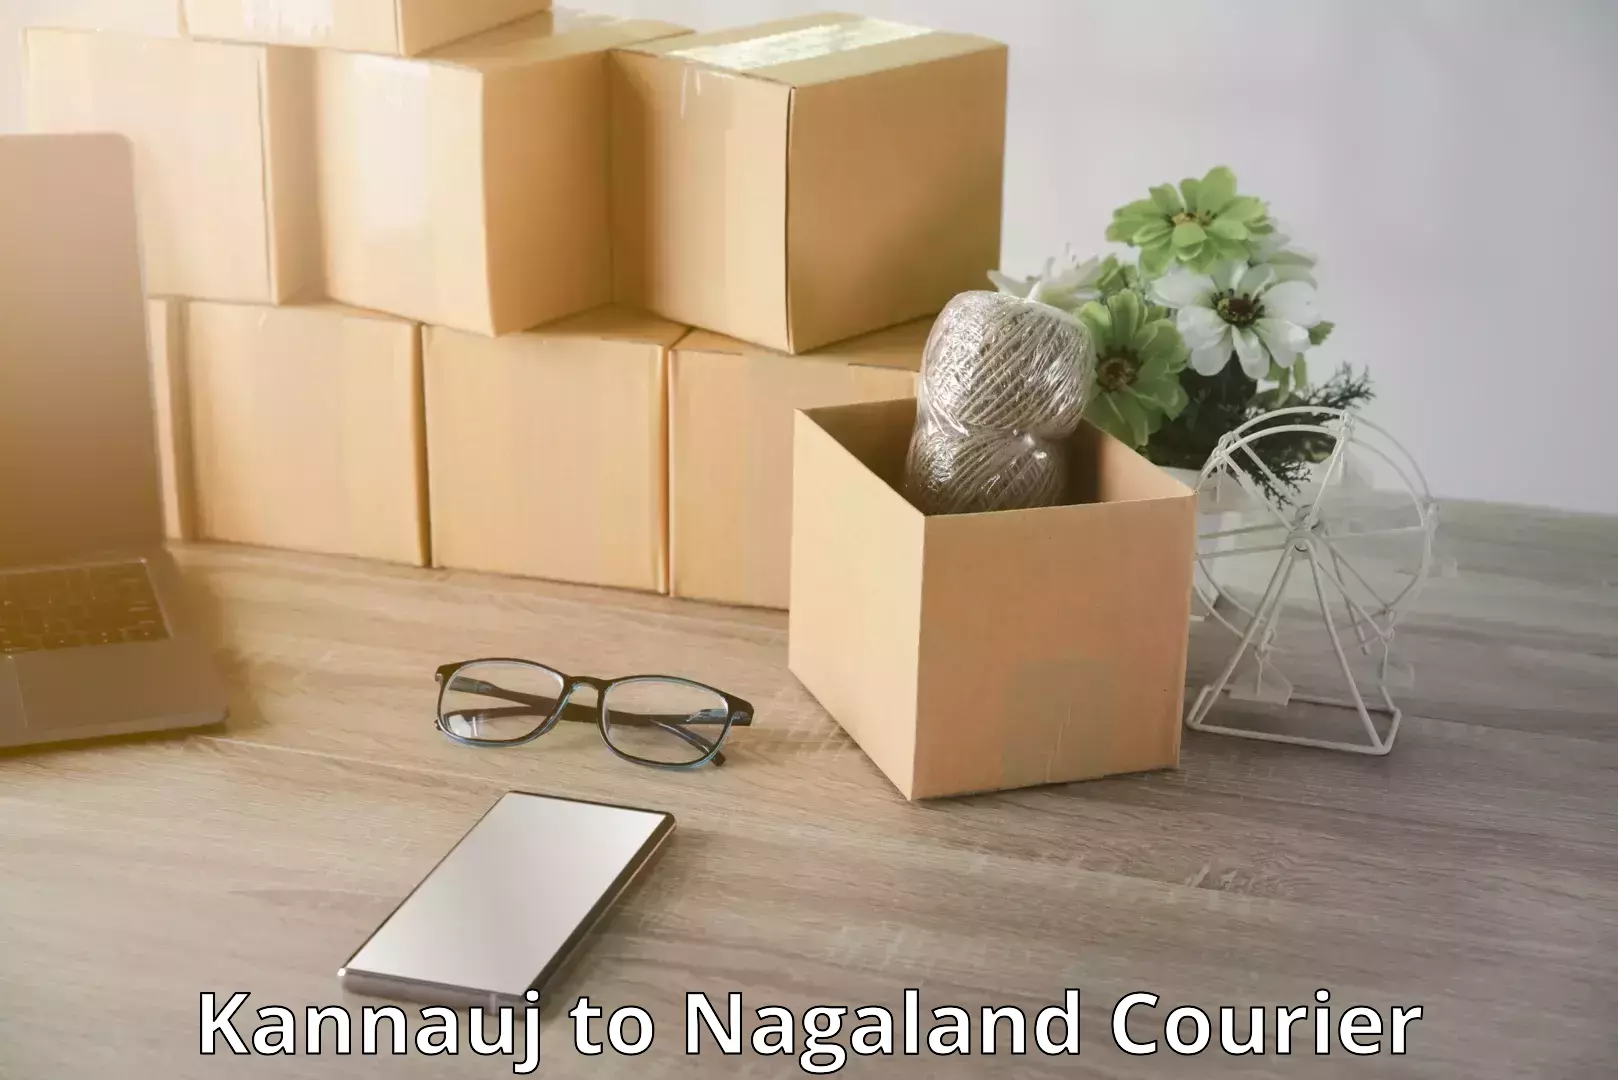 Nationwide luggage courier Kannauj to Nagaland